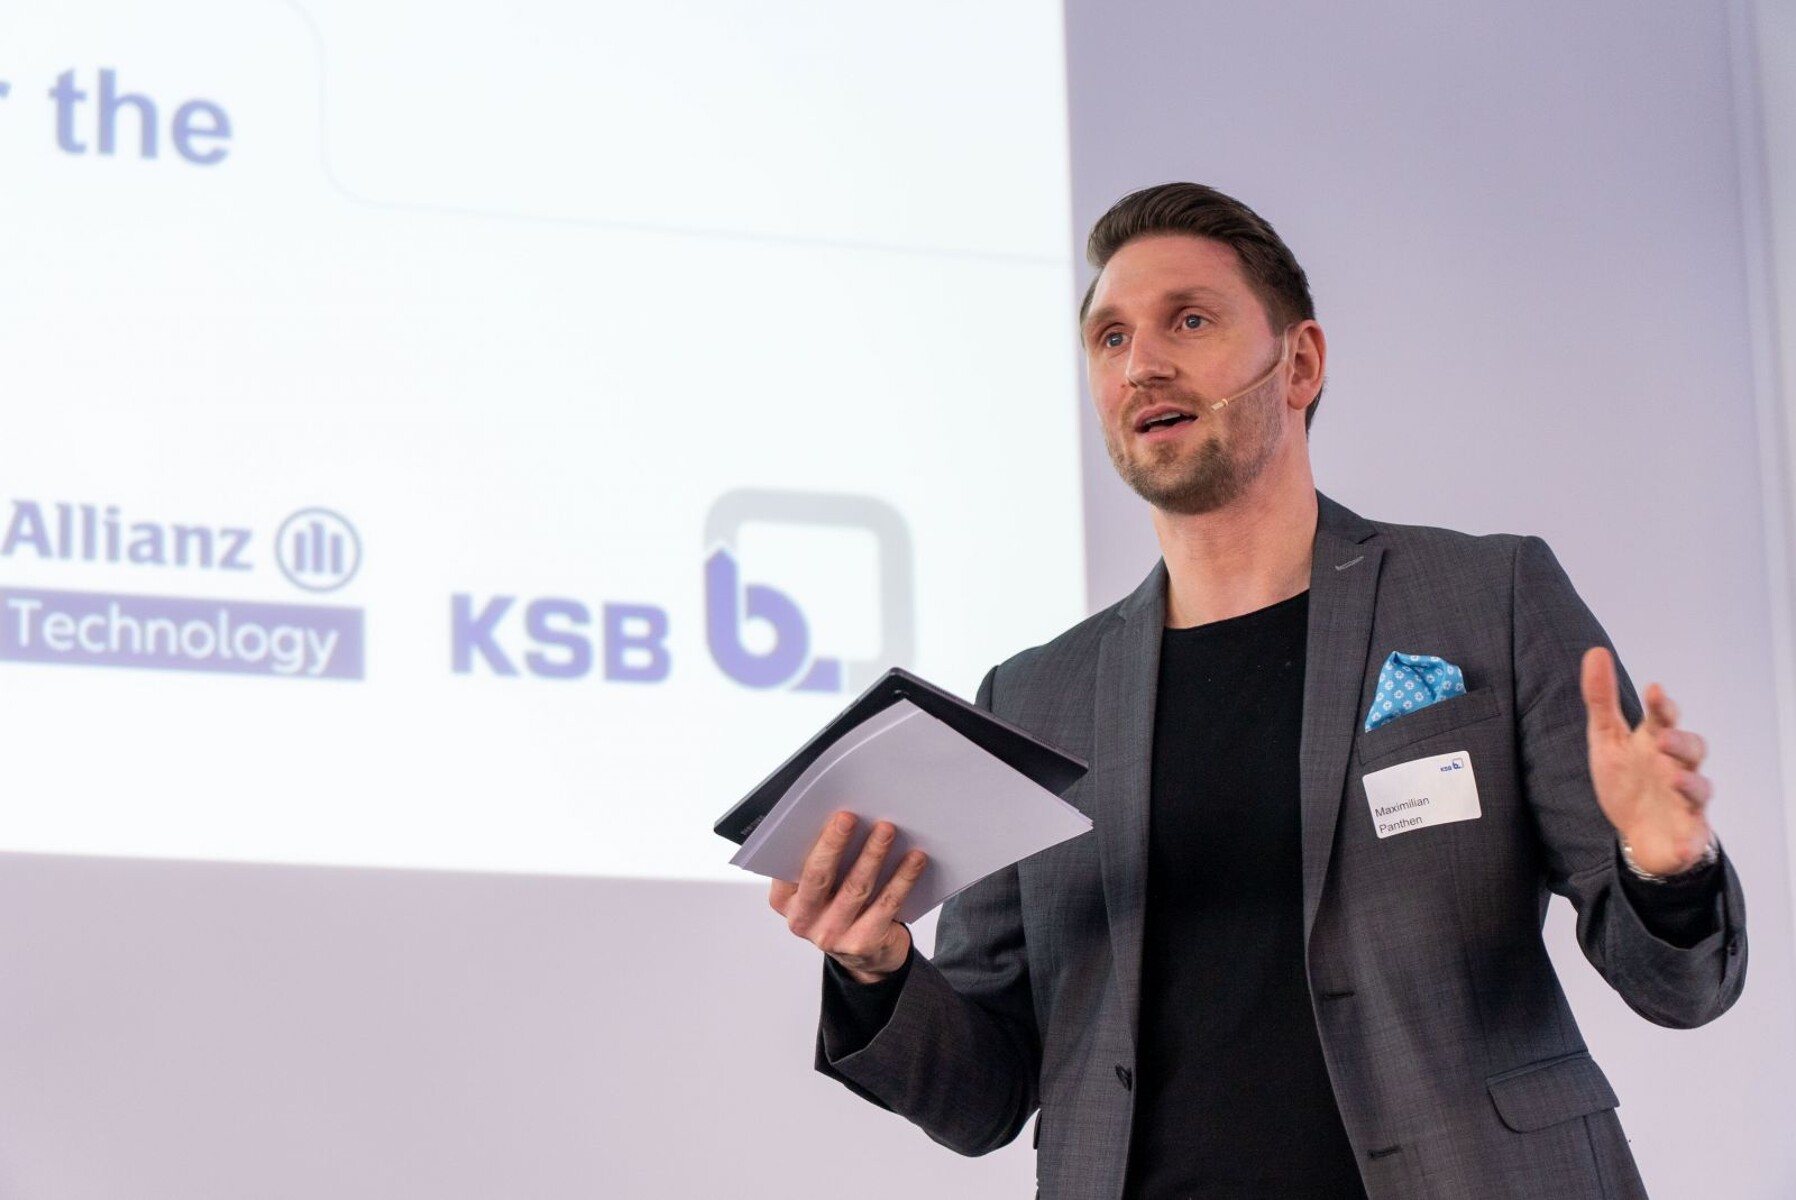 Maximilian Panthen als Redner bei einer Veranstaltung mit Mikrofon und Redenotizen in der Hand.